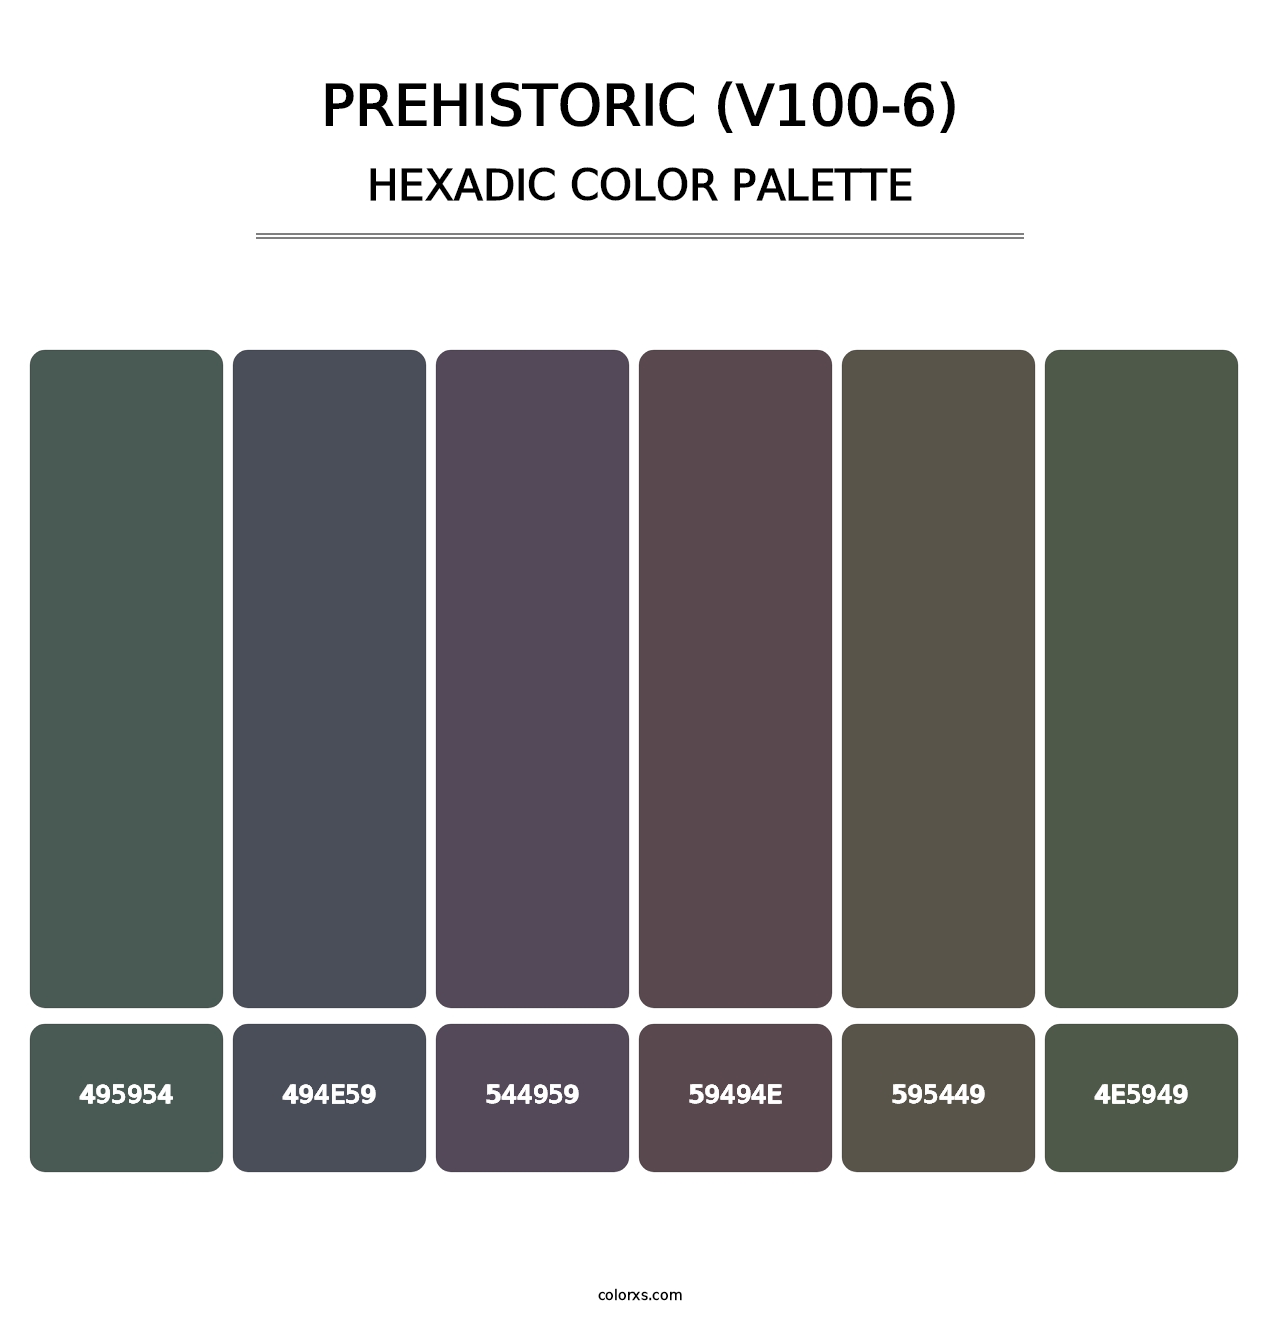 Prehistoric (V100-6) - Hexadic Color Palette